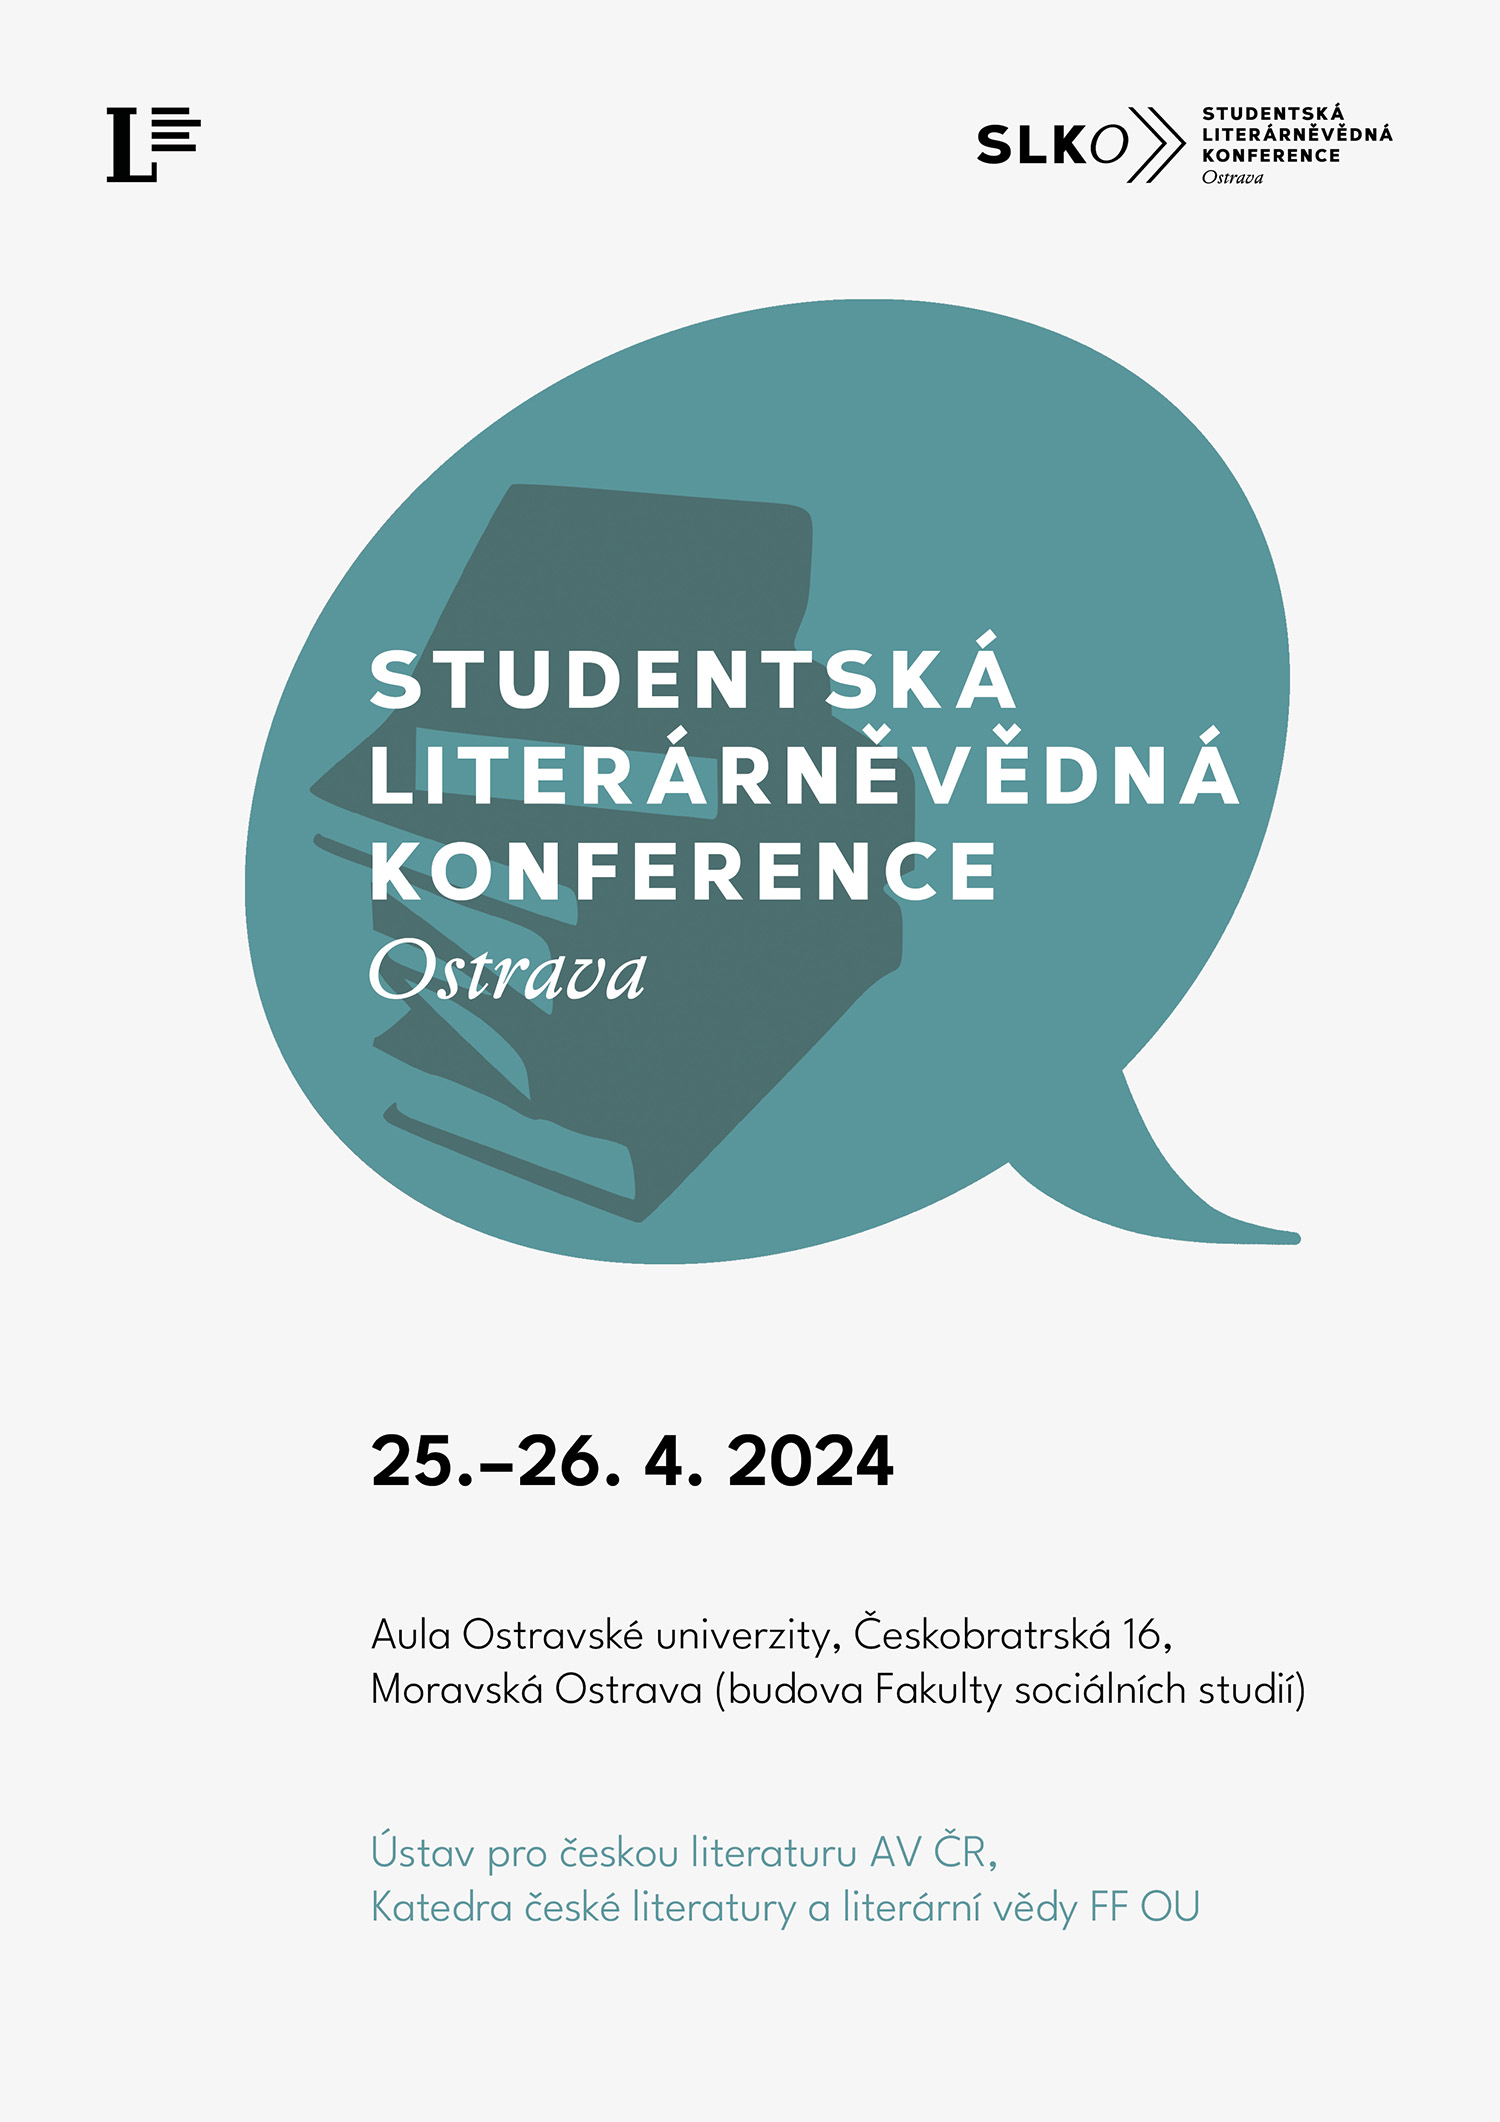 Studentská literárněvědná konference 2024 Ostrava